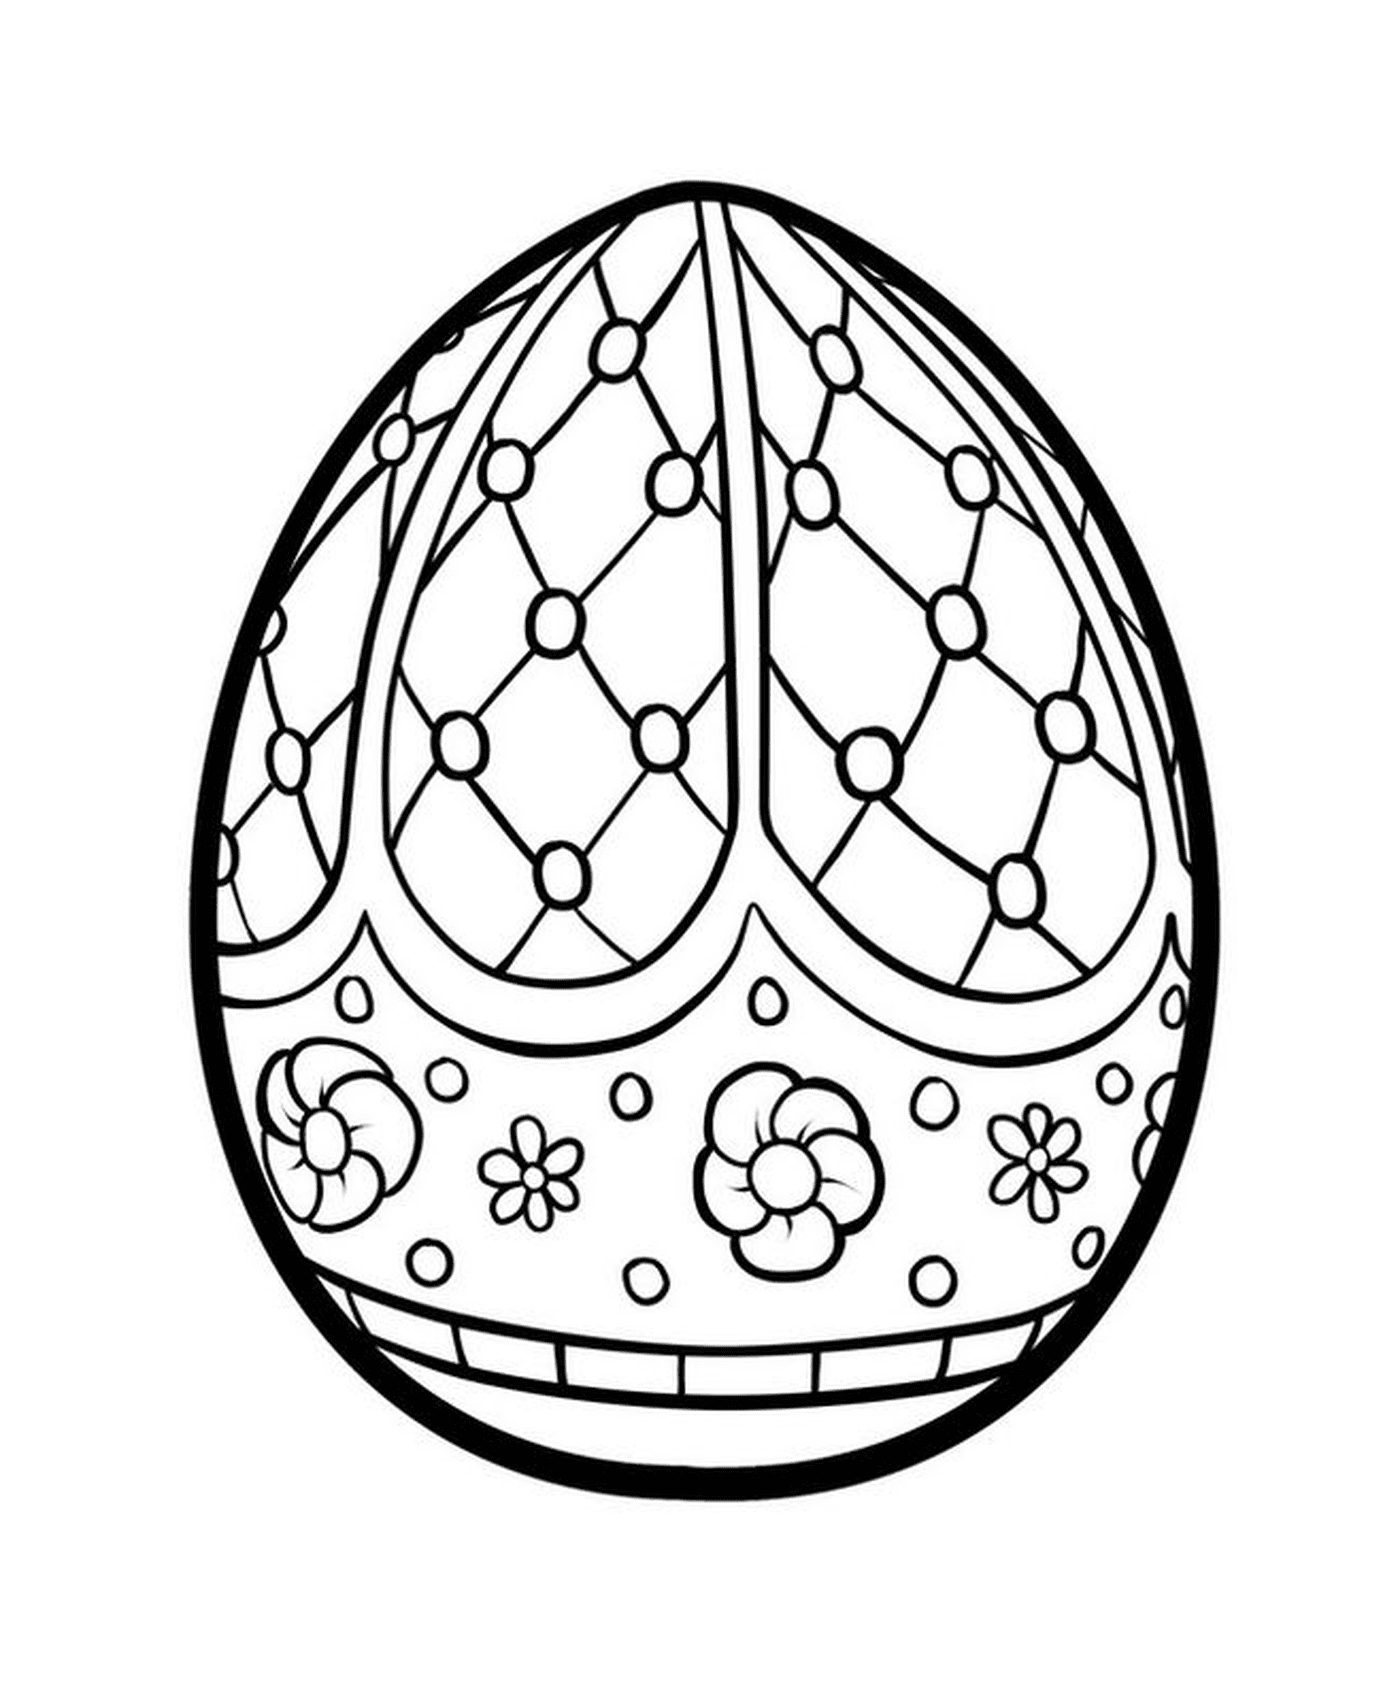  ovo de Páscoa mandala antistress para adultos, um ovo colorido 